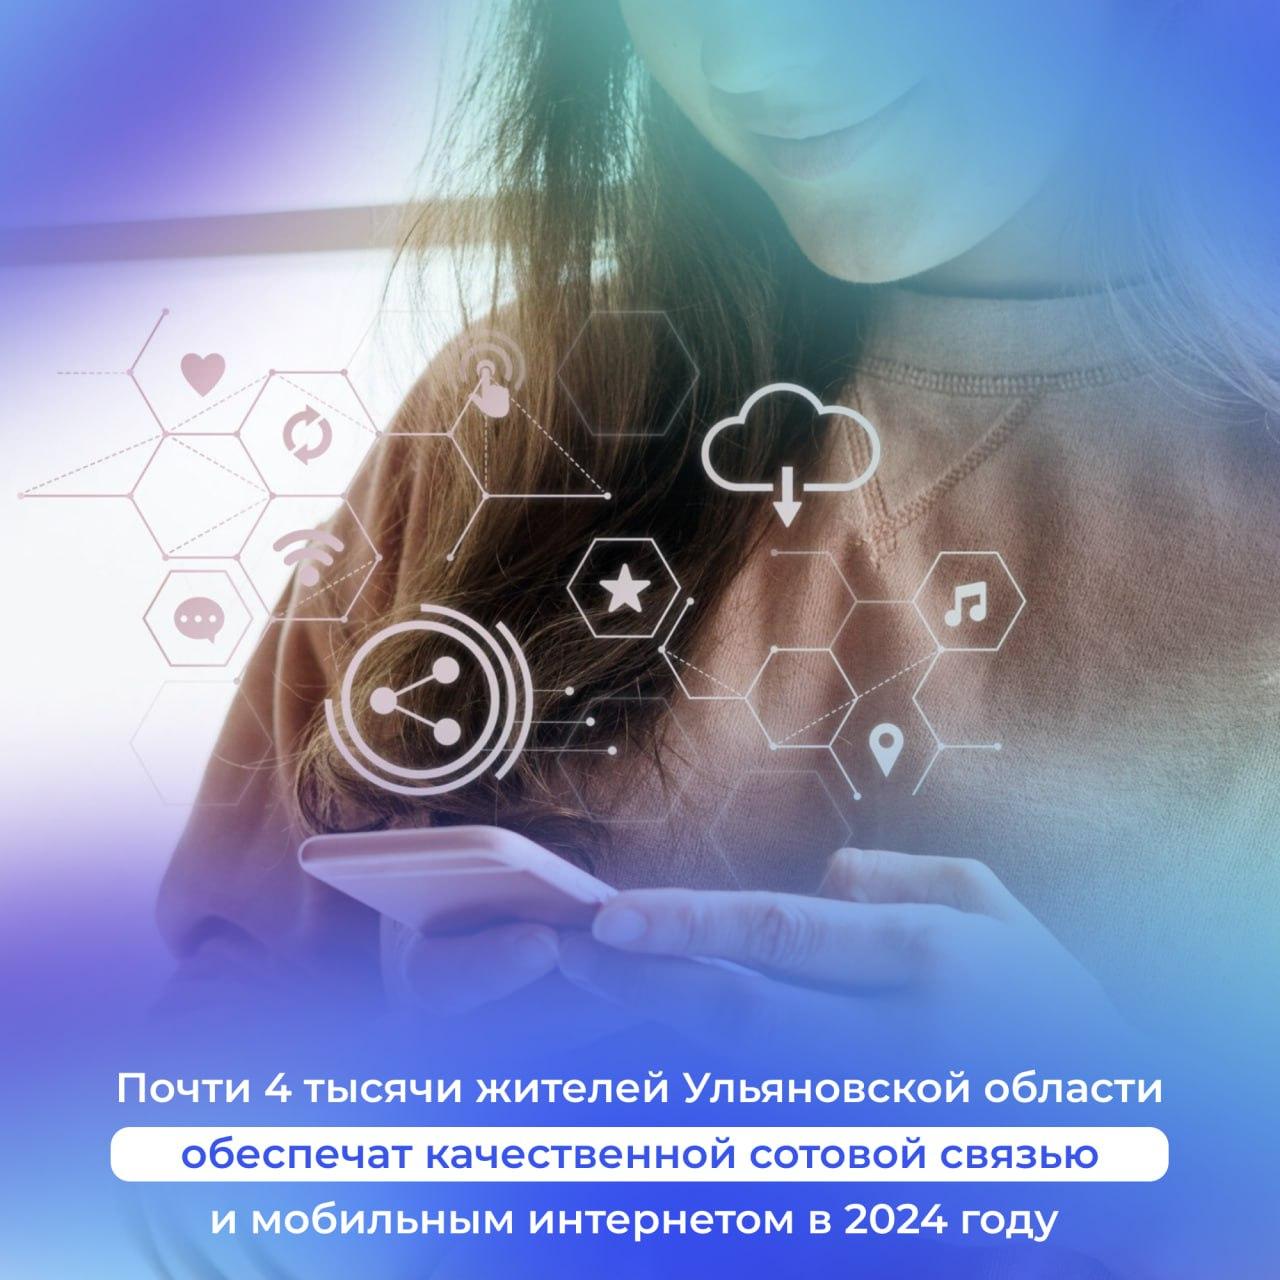 Установка вышек сотовой связи в Ульяновской области осуществляется по нацпроекту «Цифровая экономика».